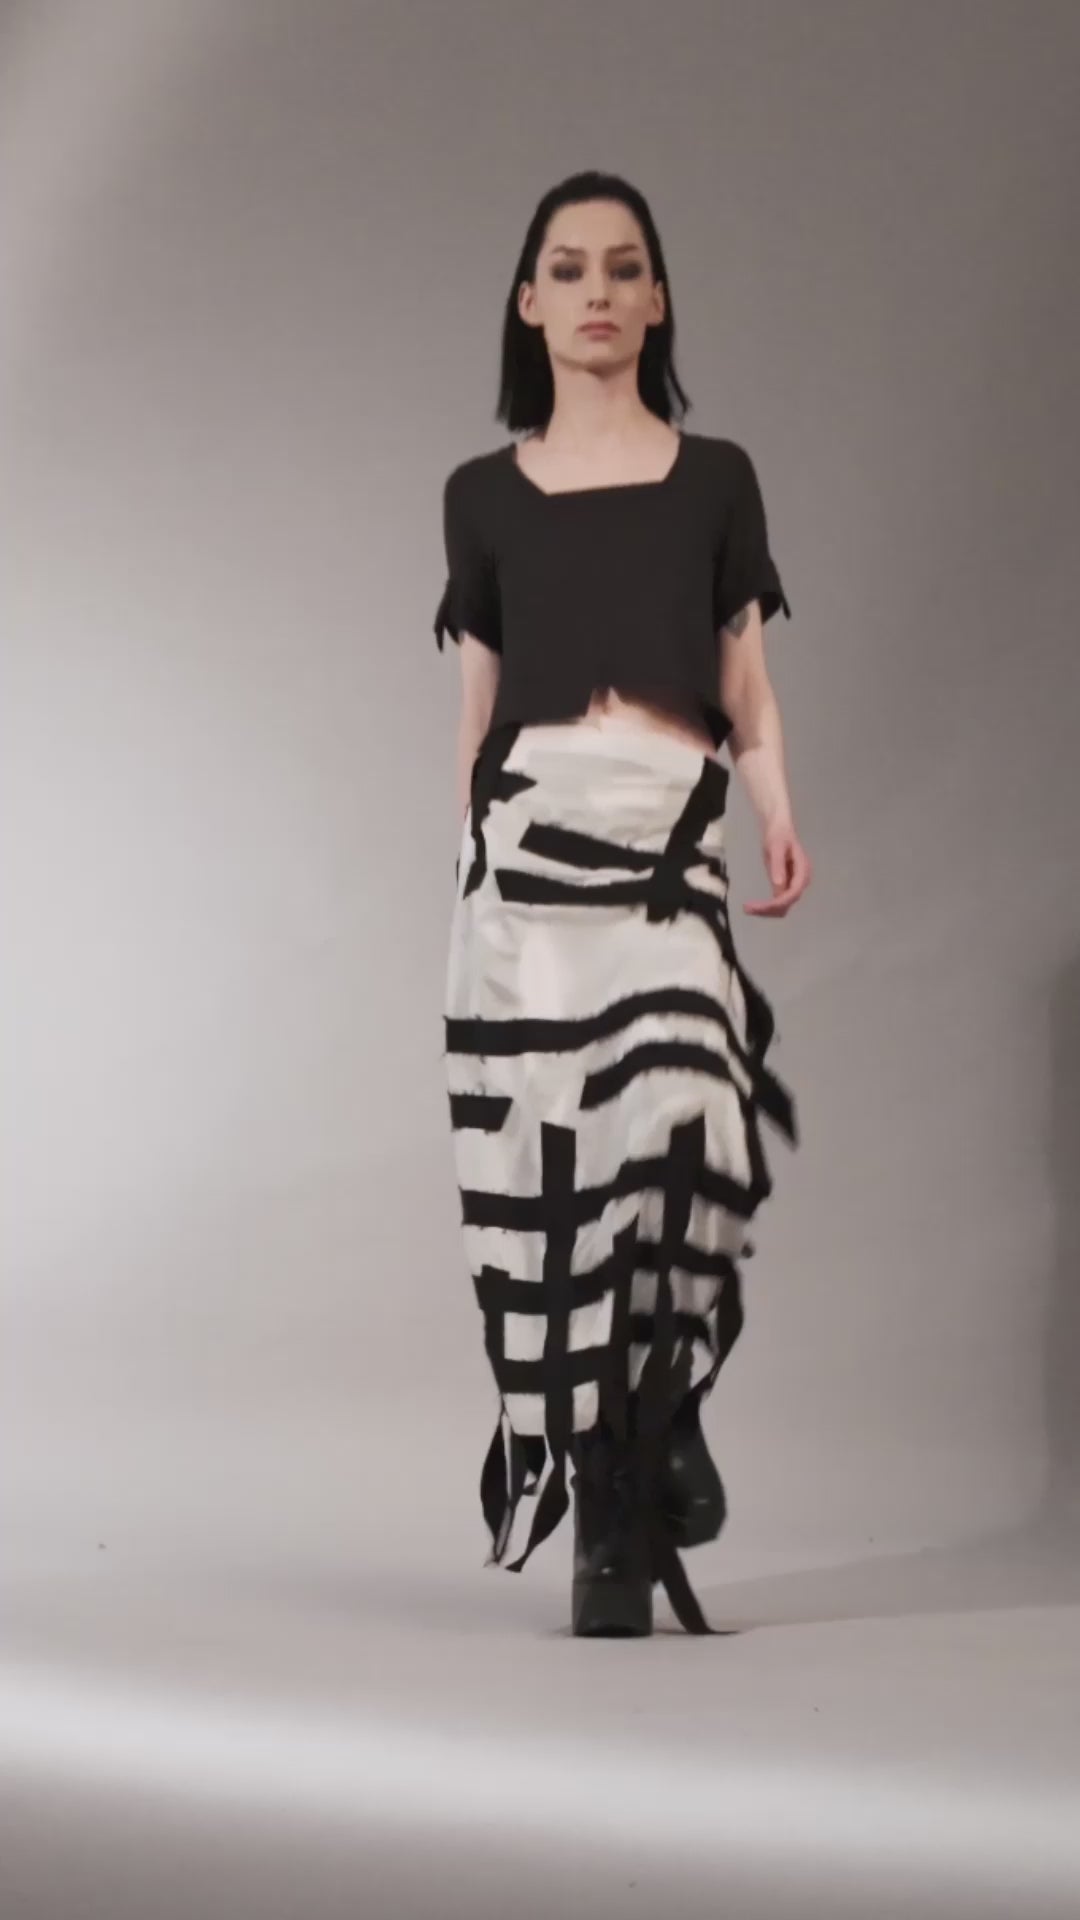 eigensinnig wien | Seattle | Designer wrap shawl in elegant grunge style